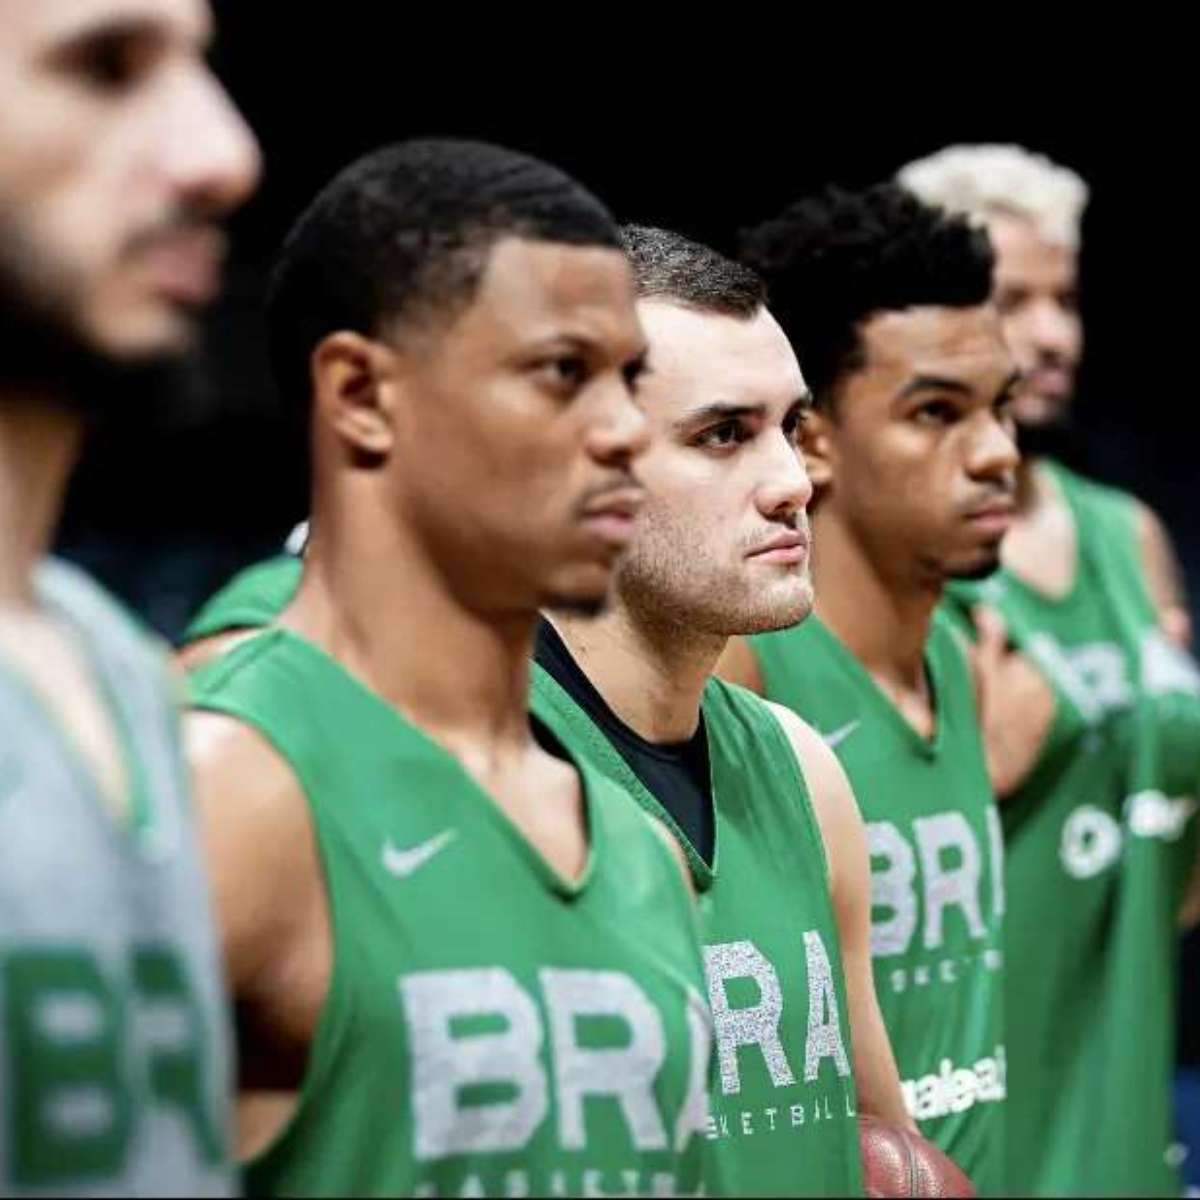 Seleção masculina de basquete vence Porto Rico e passa invicta para a  semifinal dos Jogos Pan